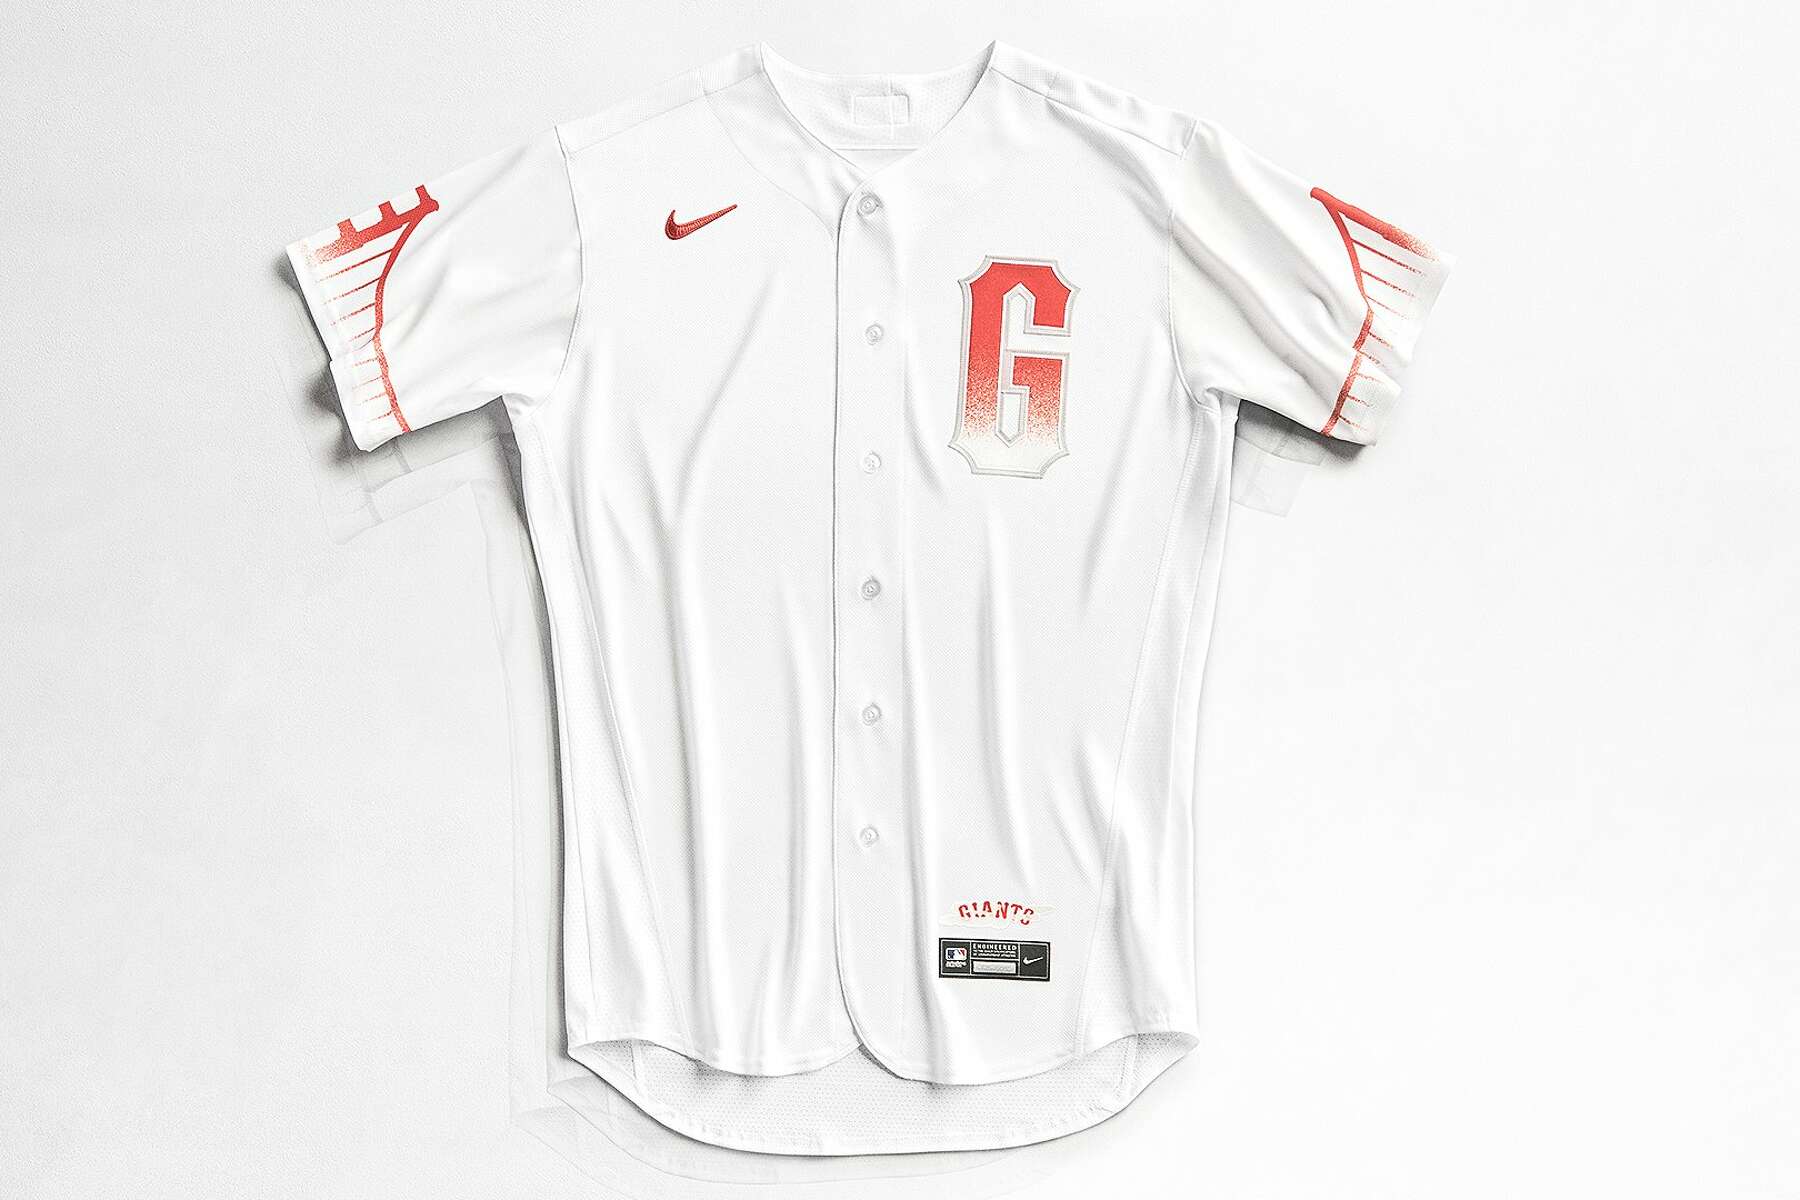 San Francisco Giants' City Connect uniforms feature Golden Gate Bridge, fog  - The Athletic